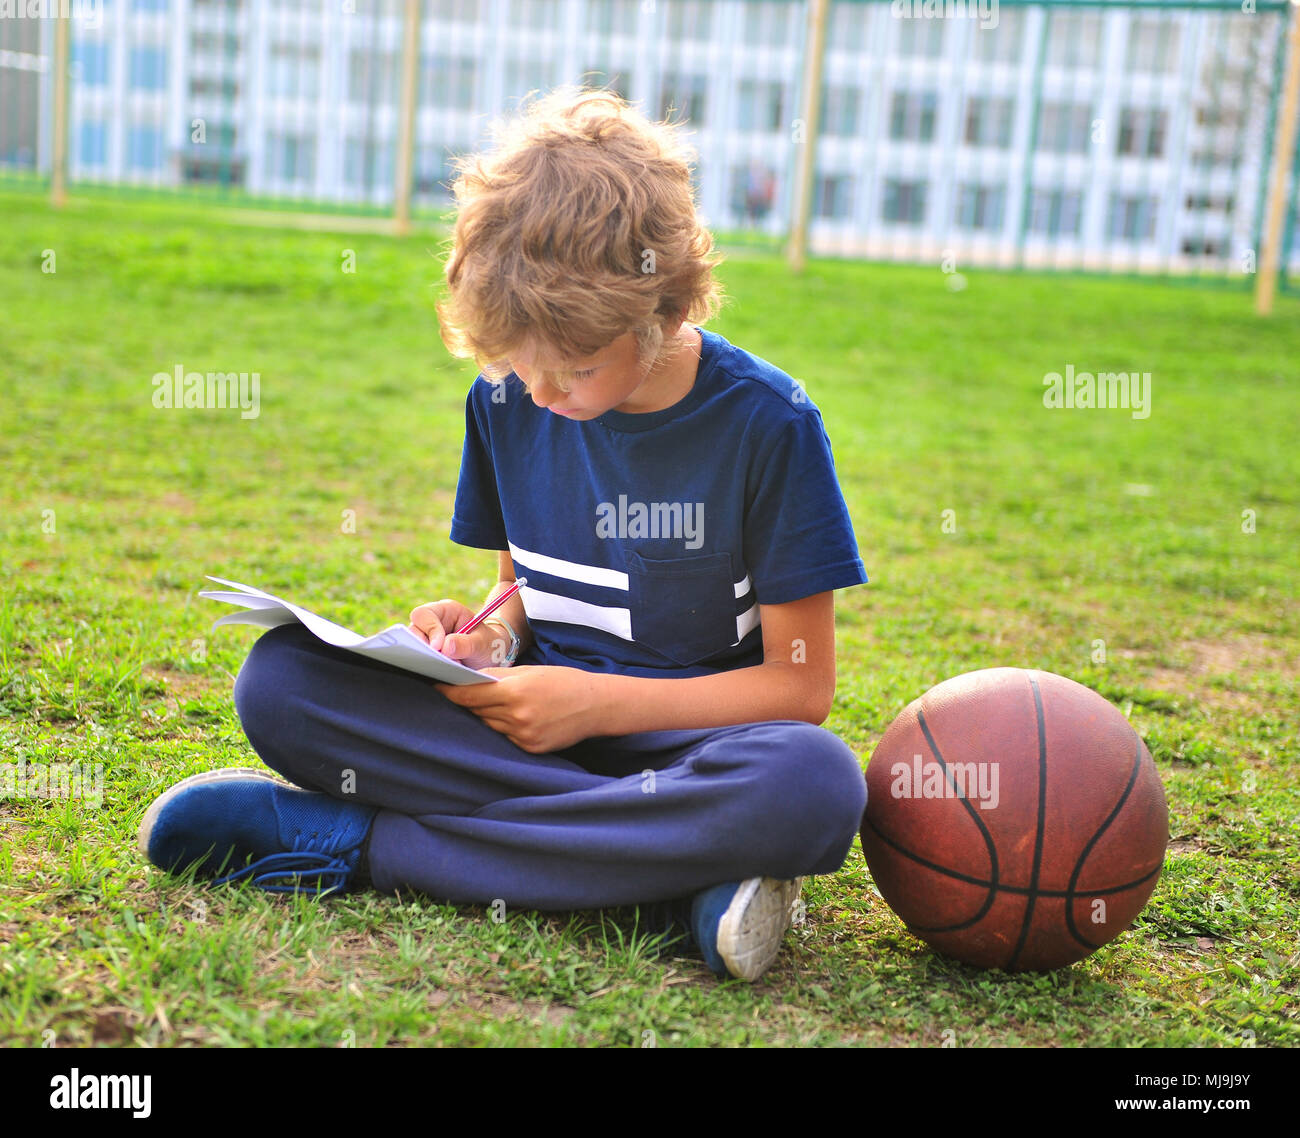 Junge mit Papier und Basketball auf dem Gras Stockfoto